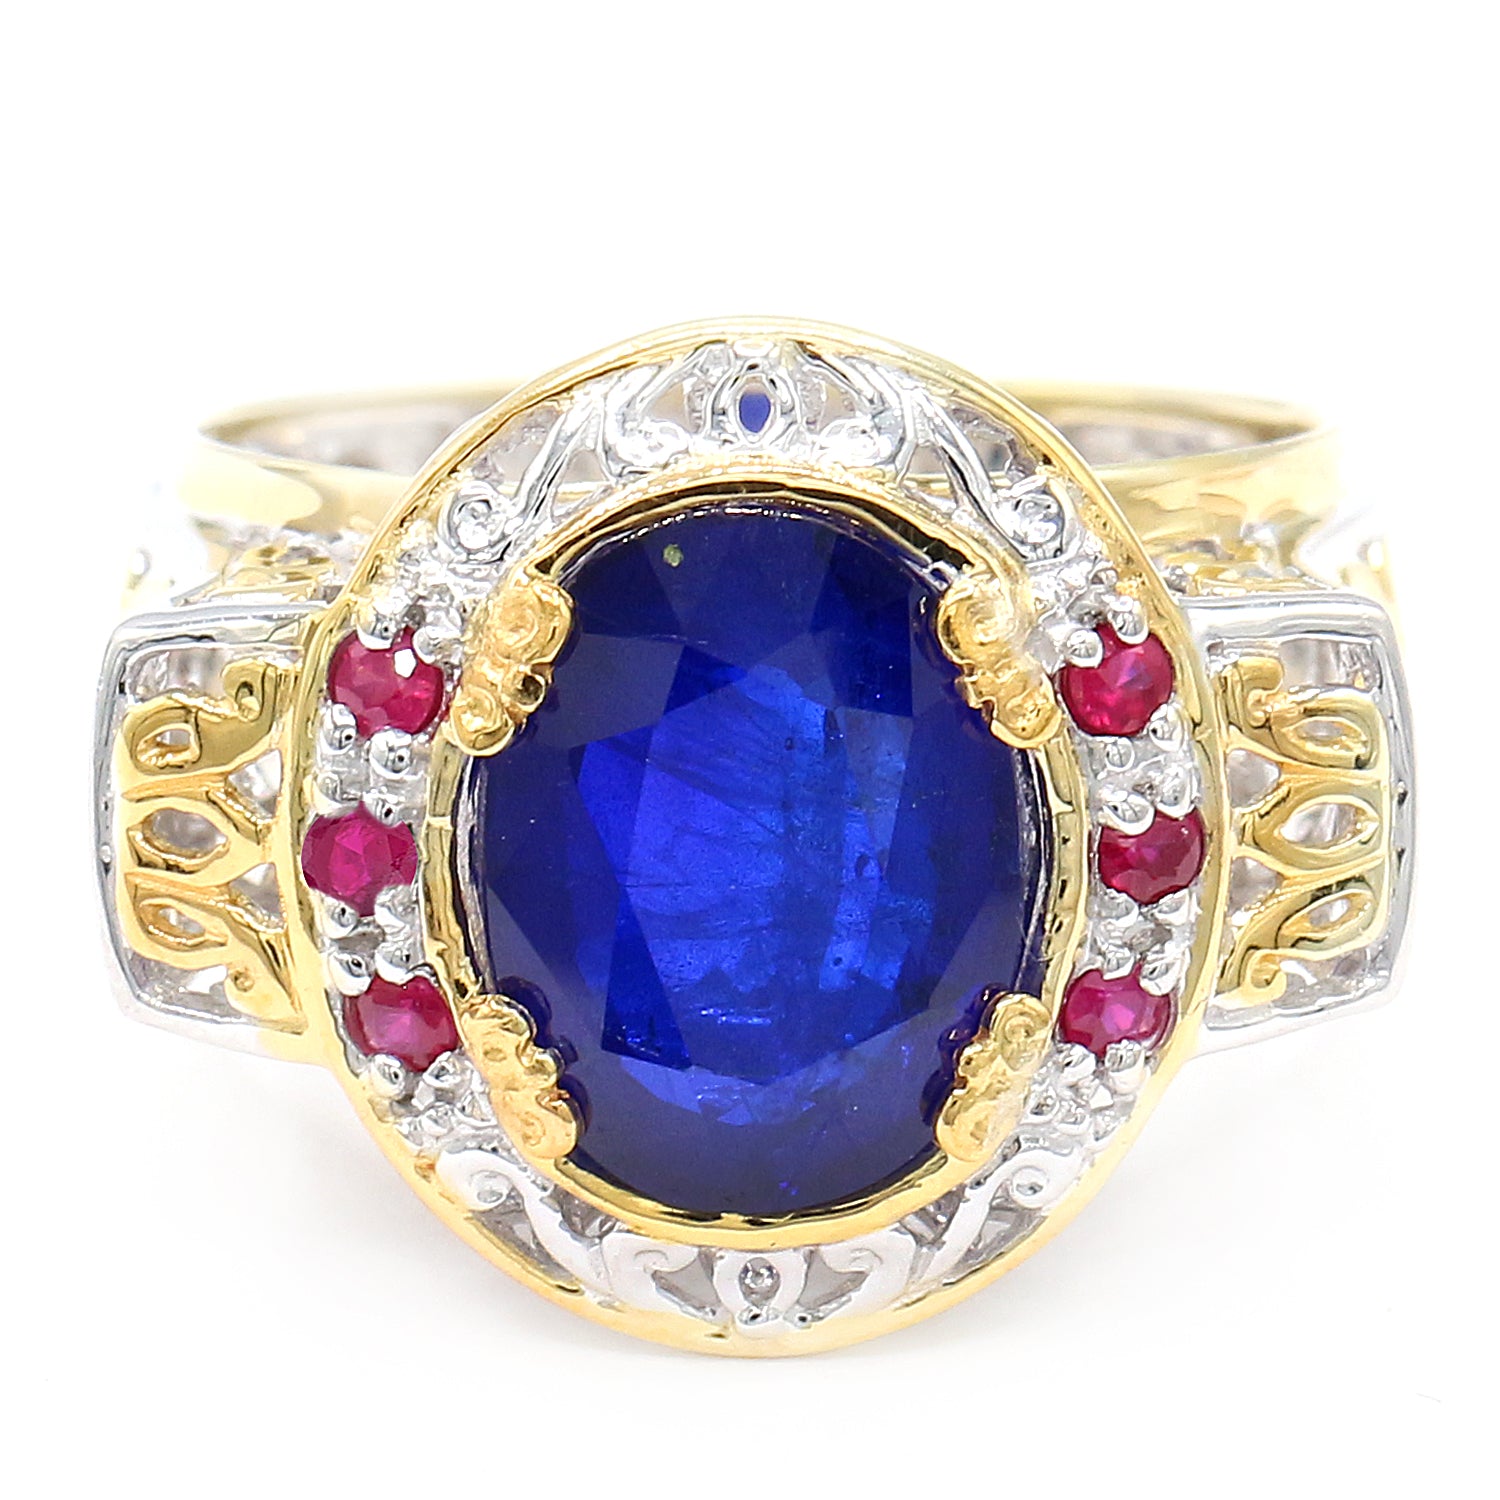 Limited Edition Gems en Vogue 5.74ctw Cobalt Blue Spinel & Ruby Ring